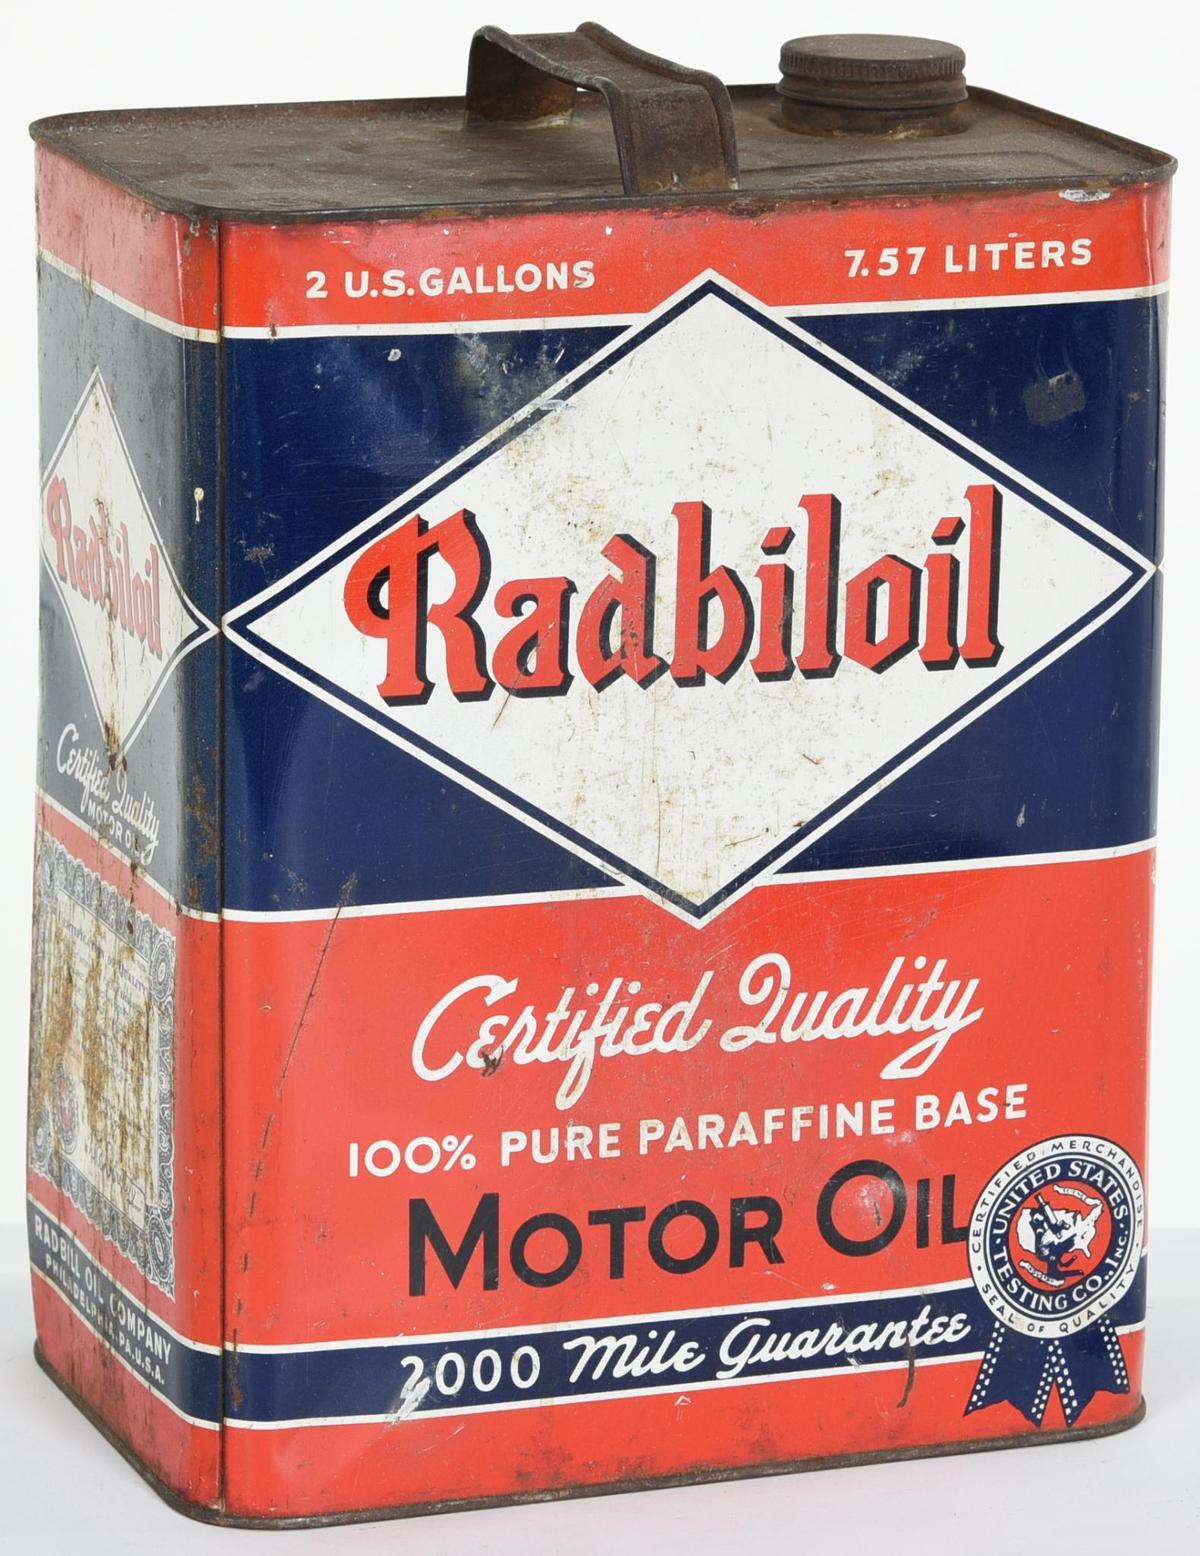 Radbiloil Motor Oil 2 Gallon Can